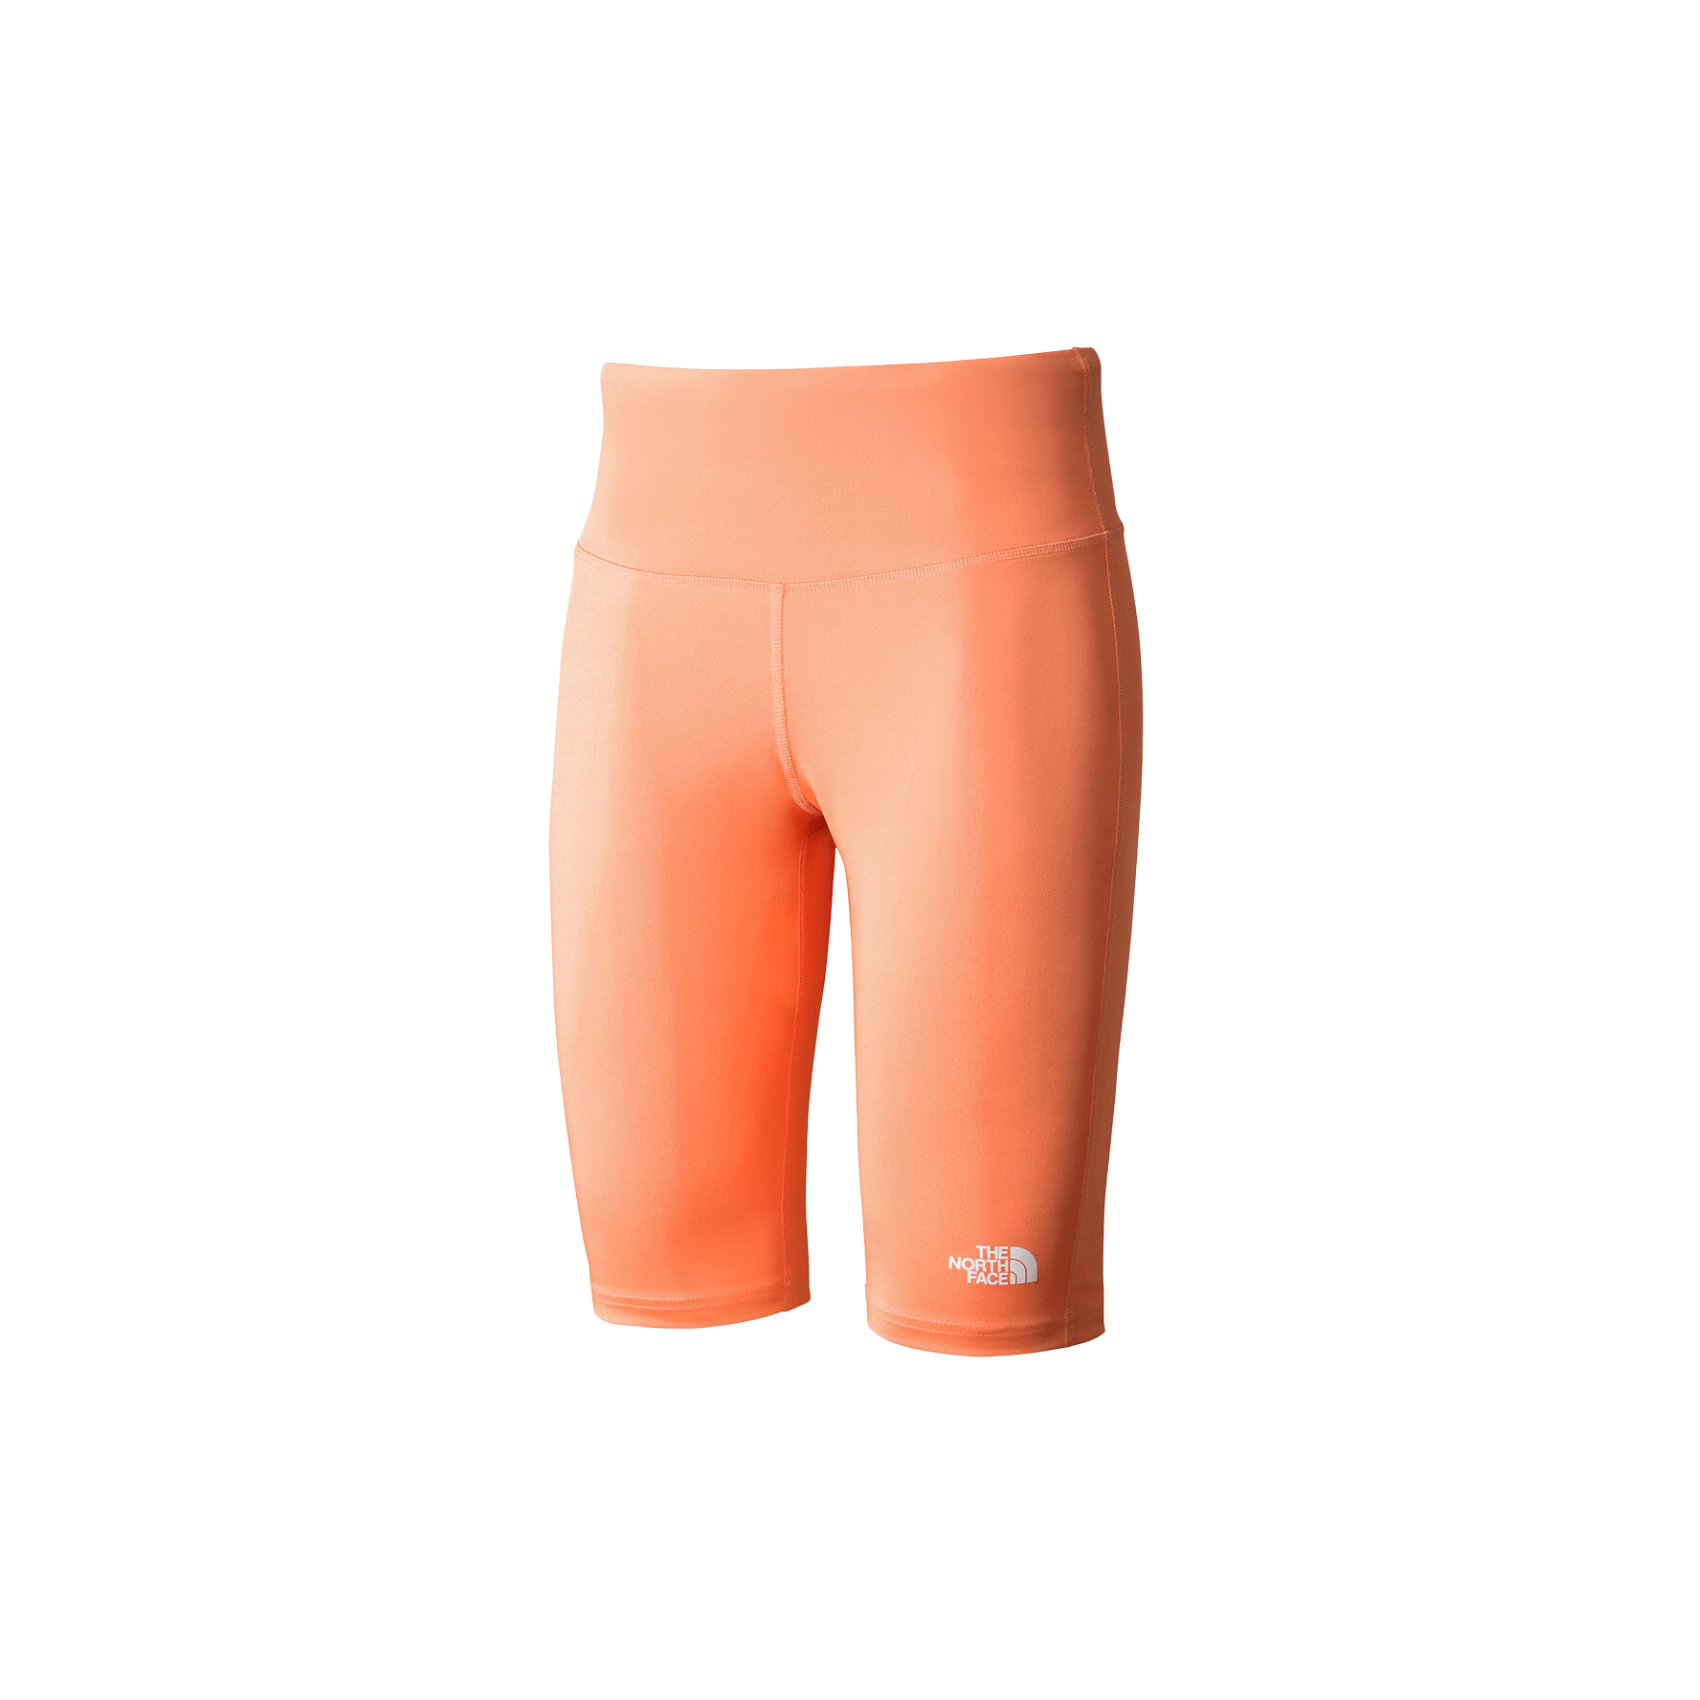 W Flex Short Tight - Dusty Coral Orange